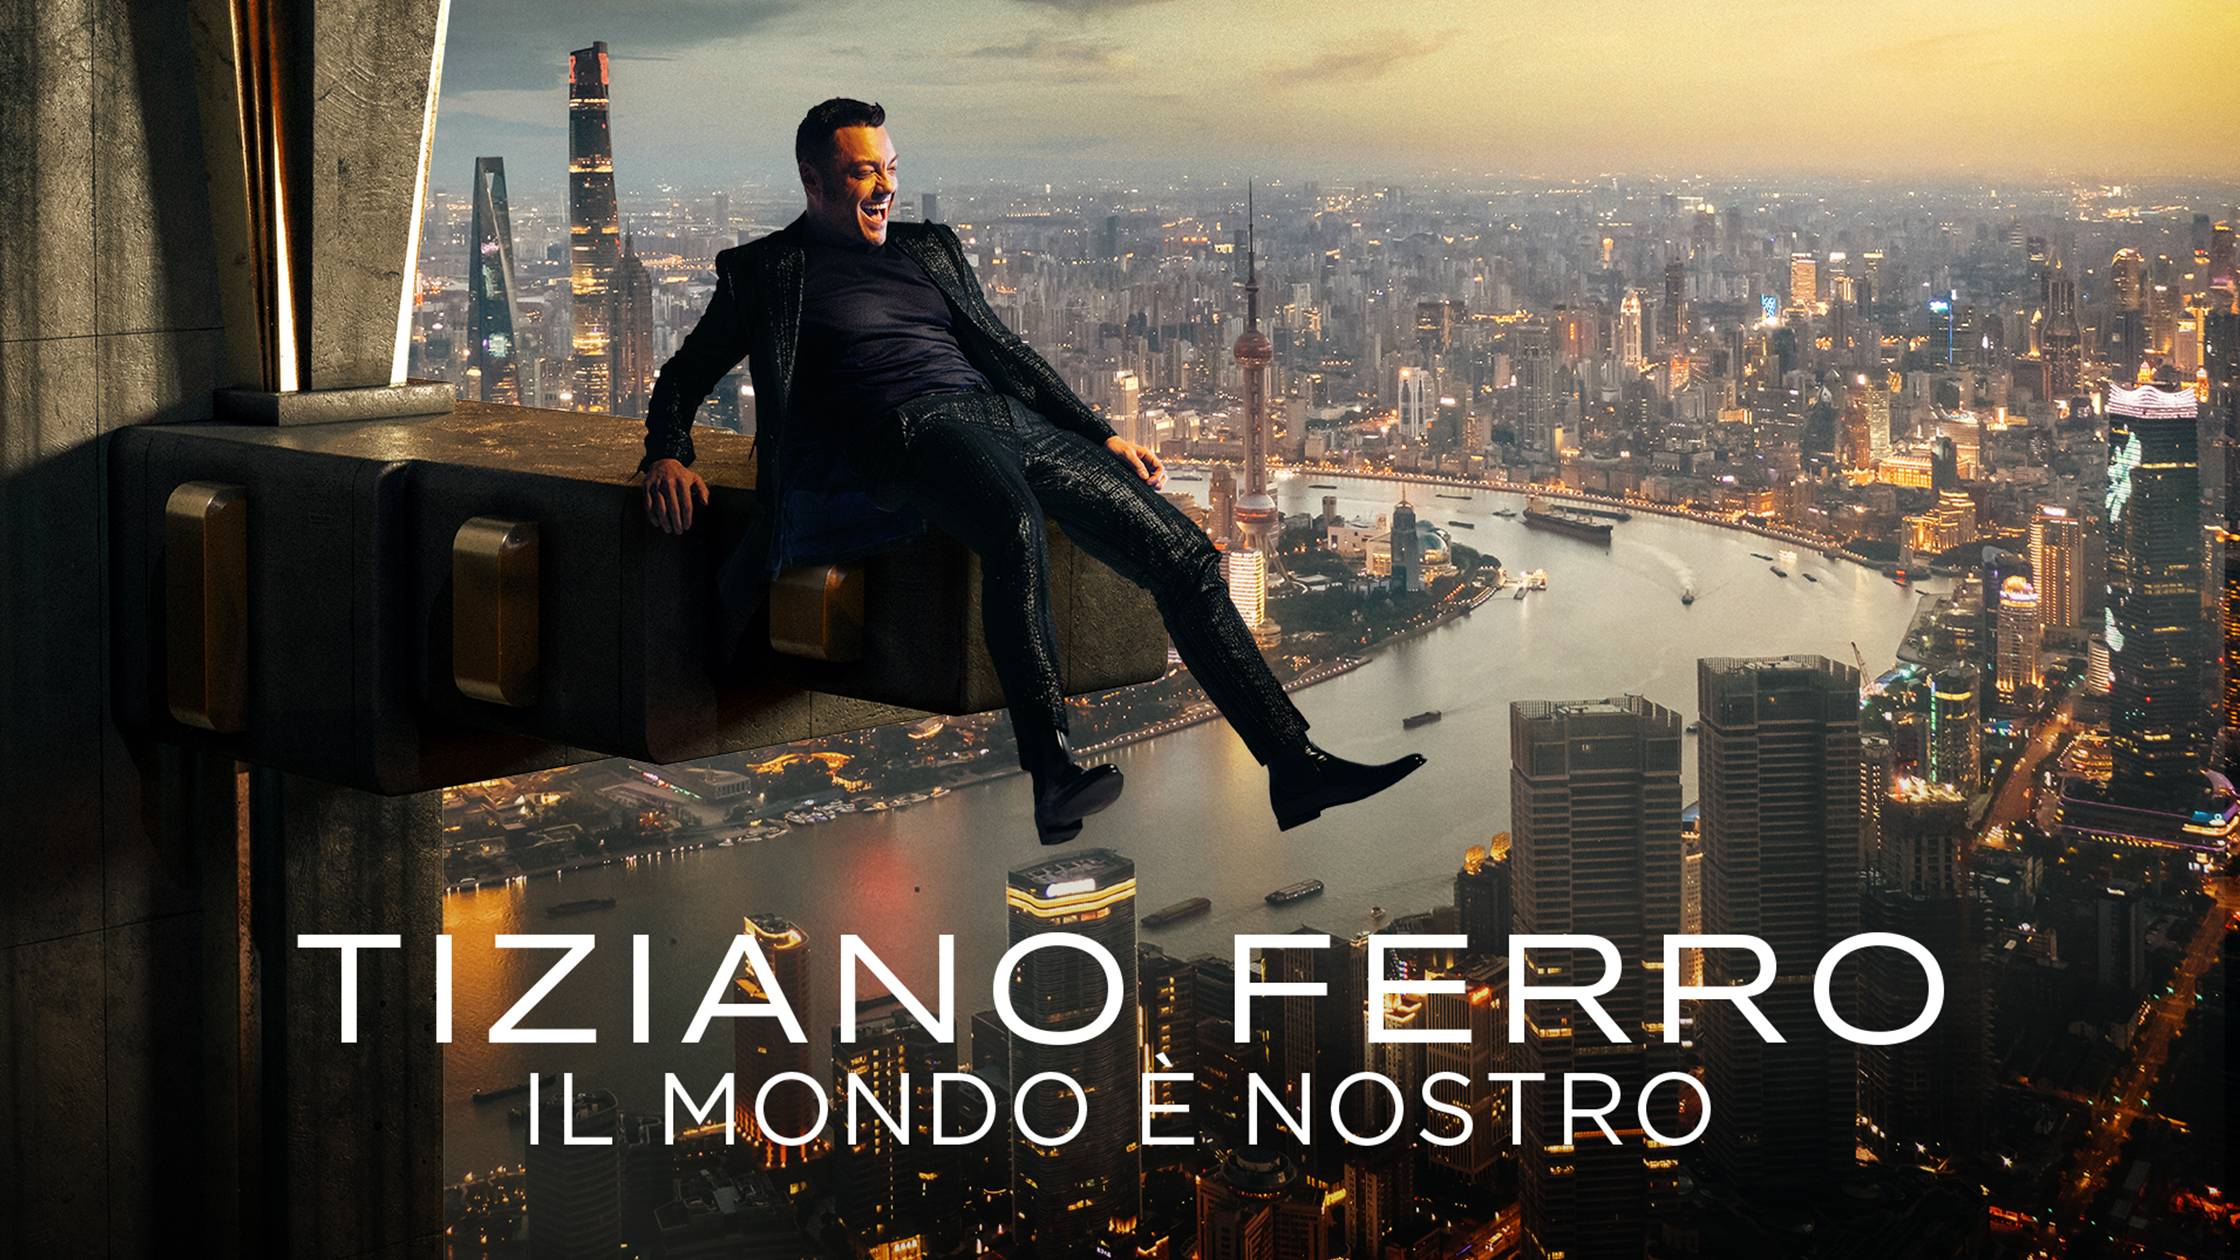 Tiziano Ferro Album cover by Walid Azami